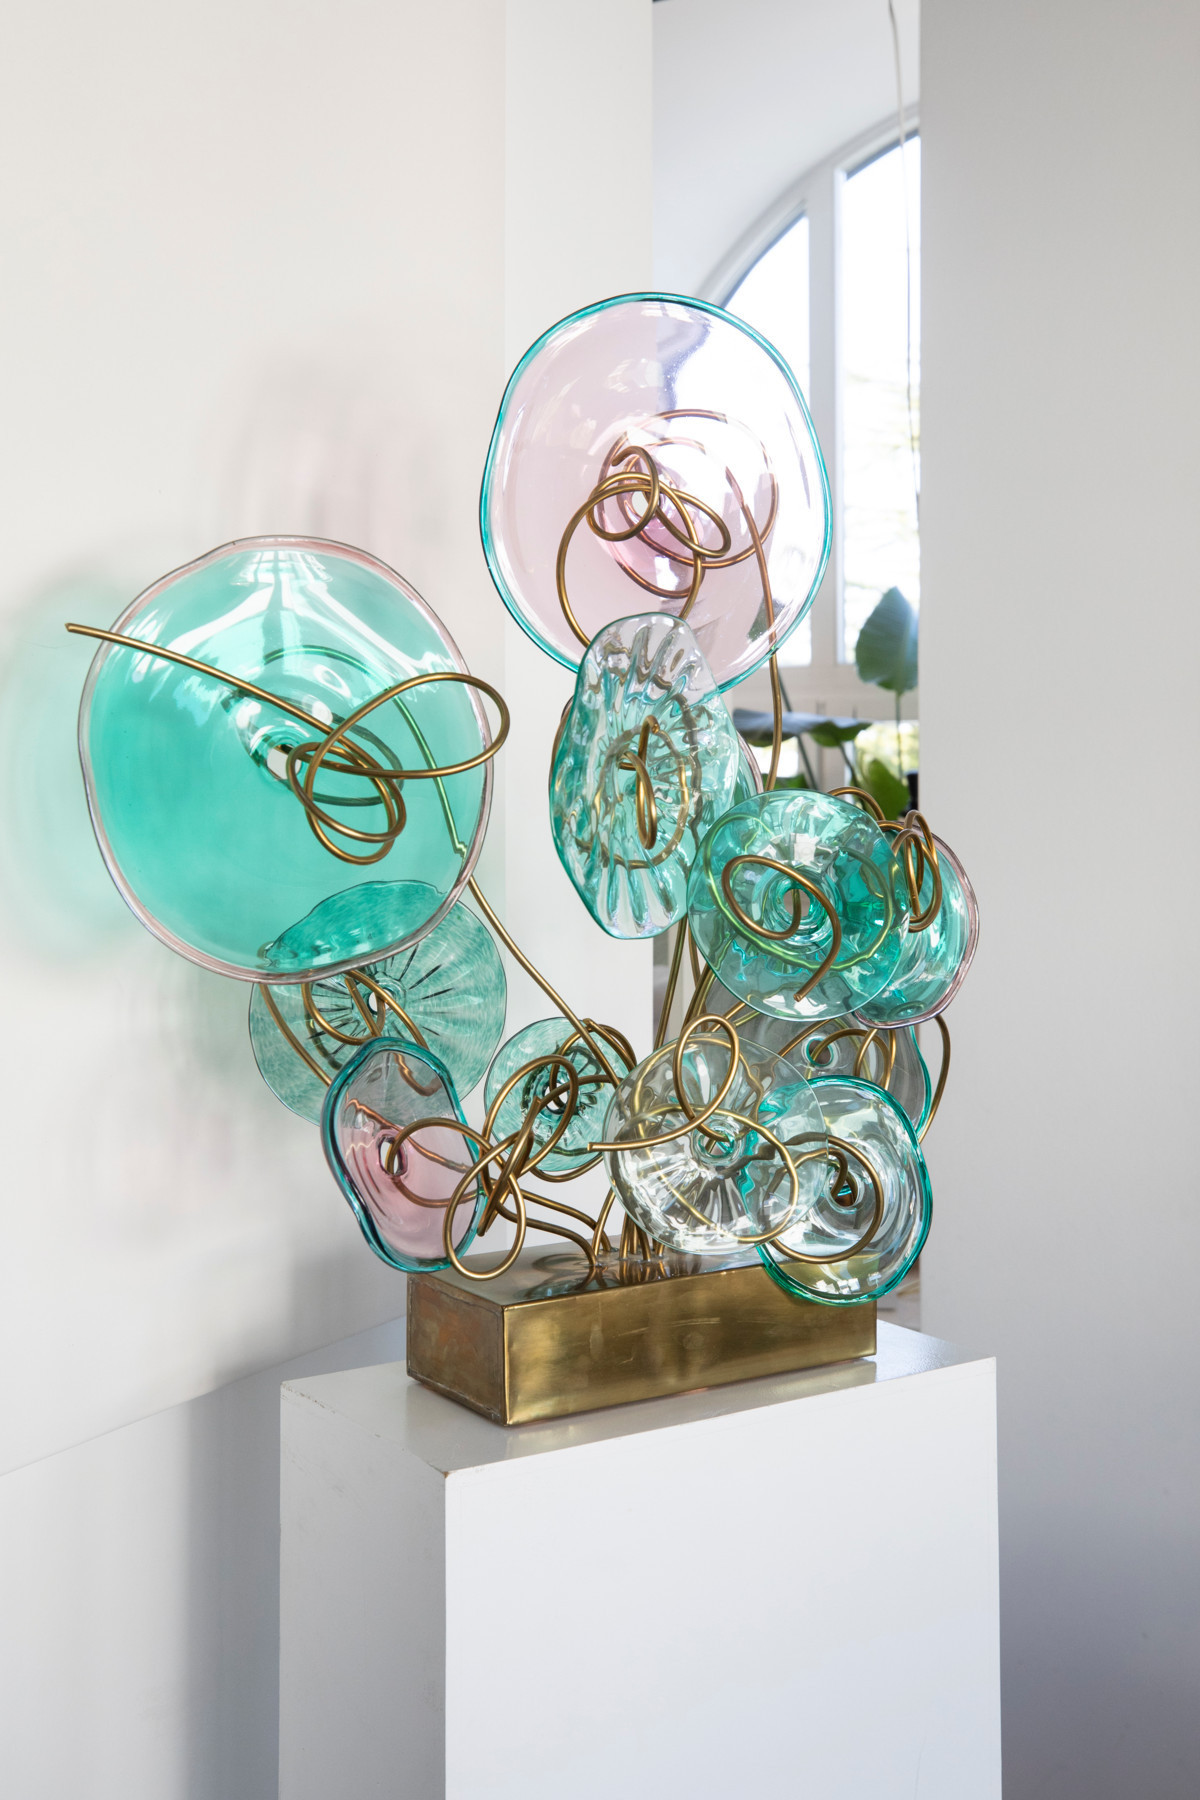 Ces sculptures sont réalisées à partir de verre soufflé à la main. (Photo: Guy Wolff/Maison Moderne)